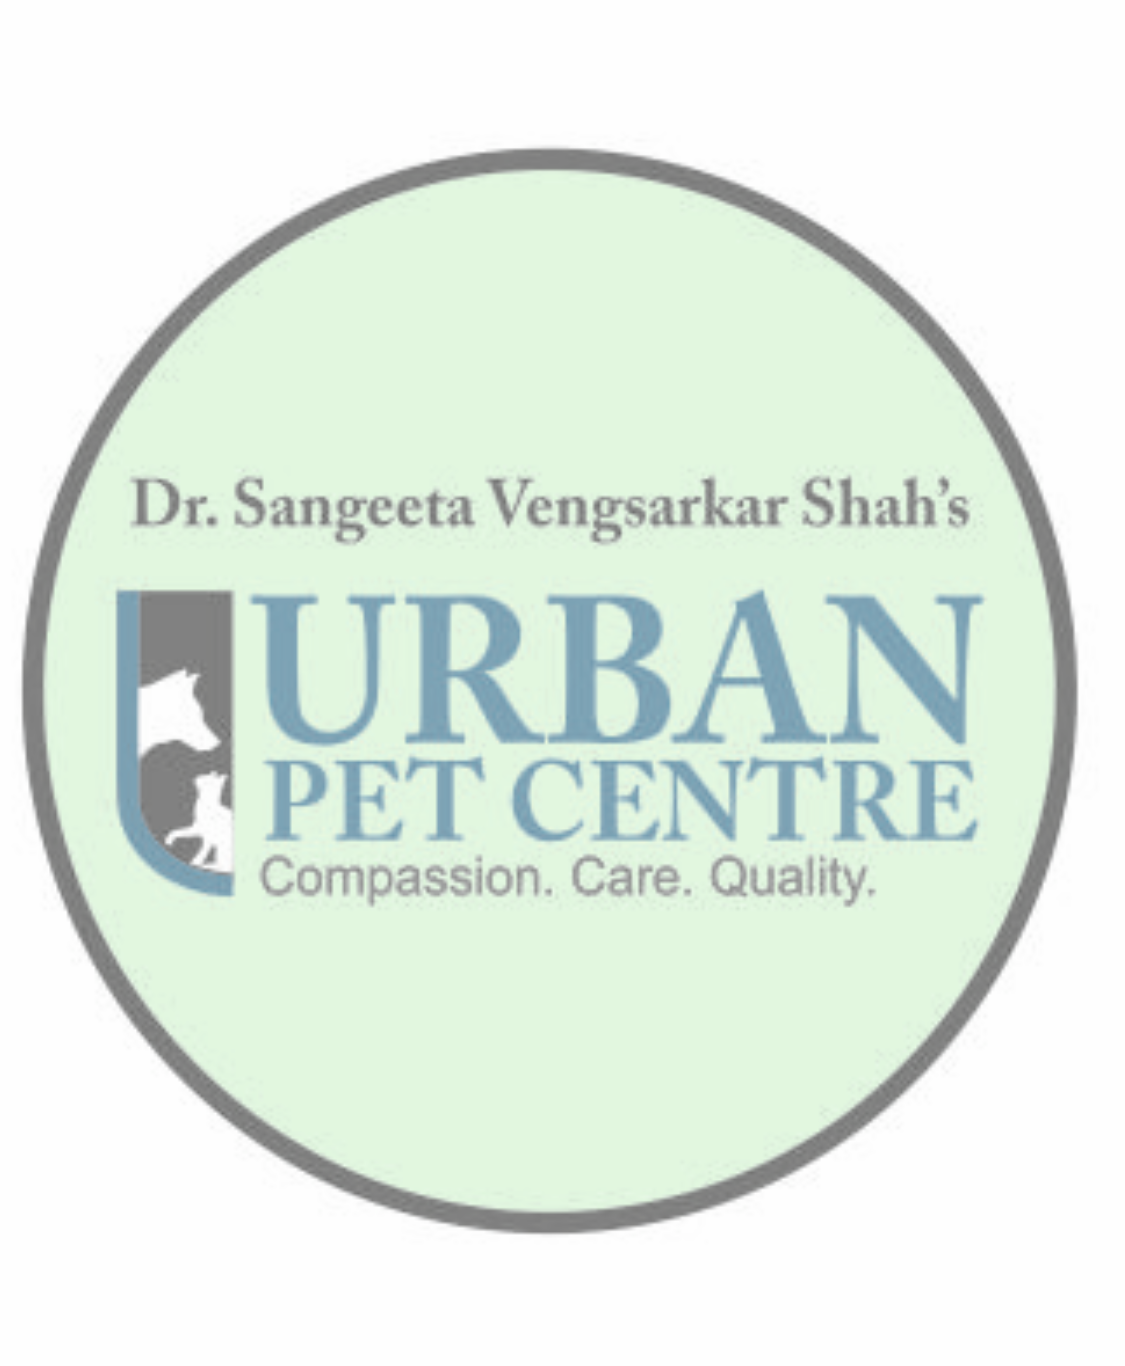 Urban Pet Centre|Diagnostic centre|Medical Services